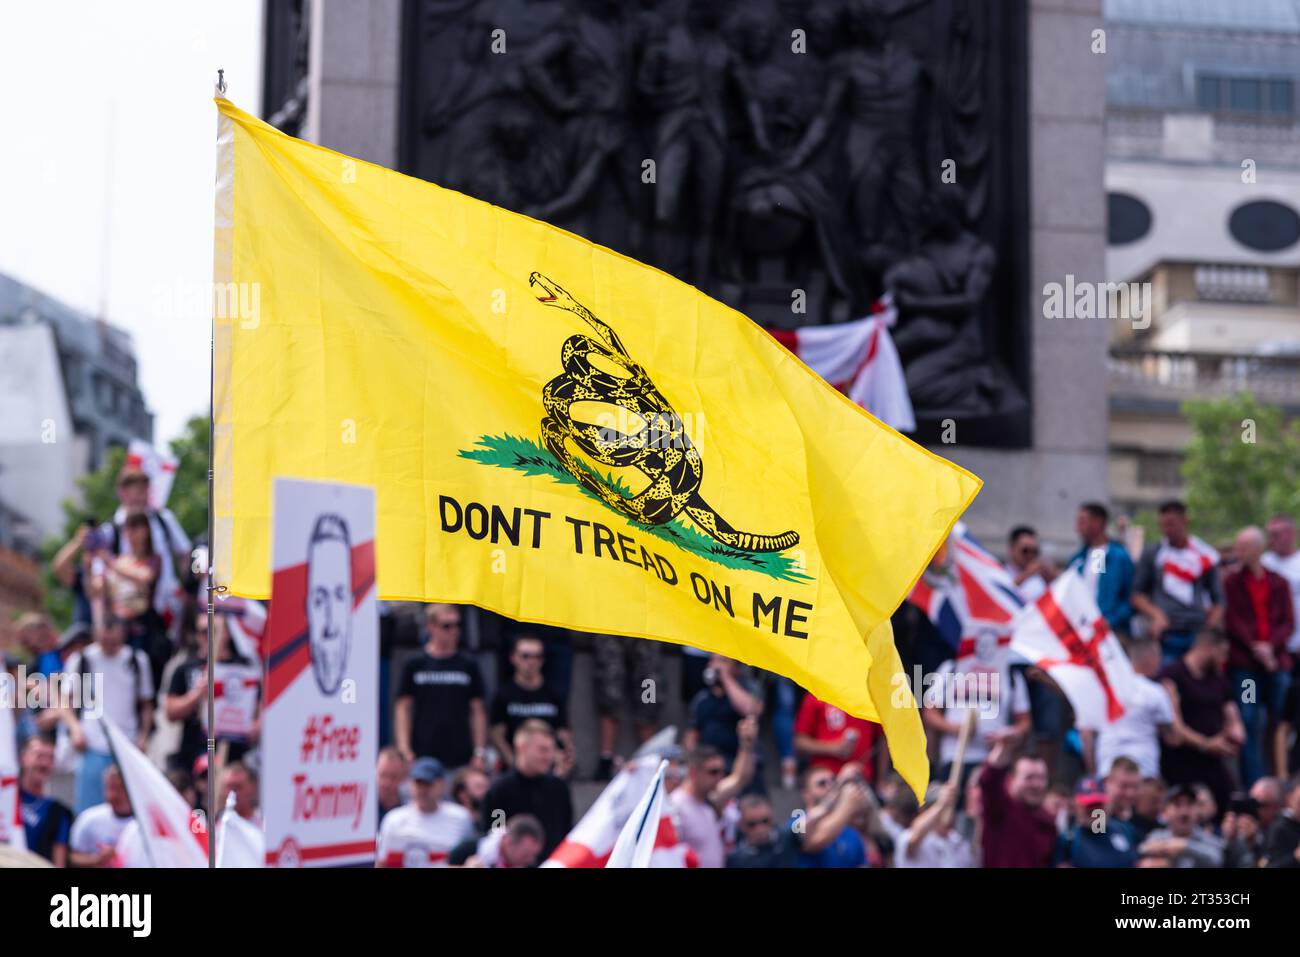 Treten Sie nicht auf die Gadsden-Flagge, während sich die englische Verteidigungsliga und Anhänger auf dem Trafalgar Square versammelten, um gegen die Verhaftung von Tommy Robinson zu protestieren Stockfoto